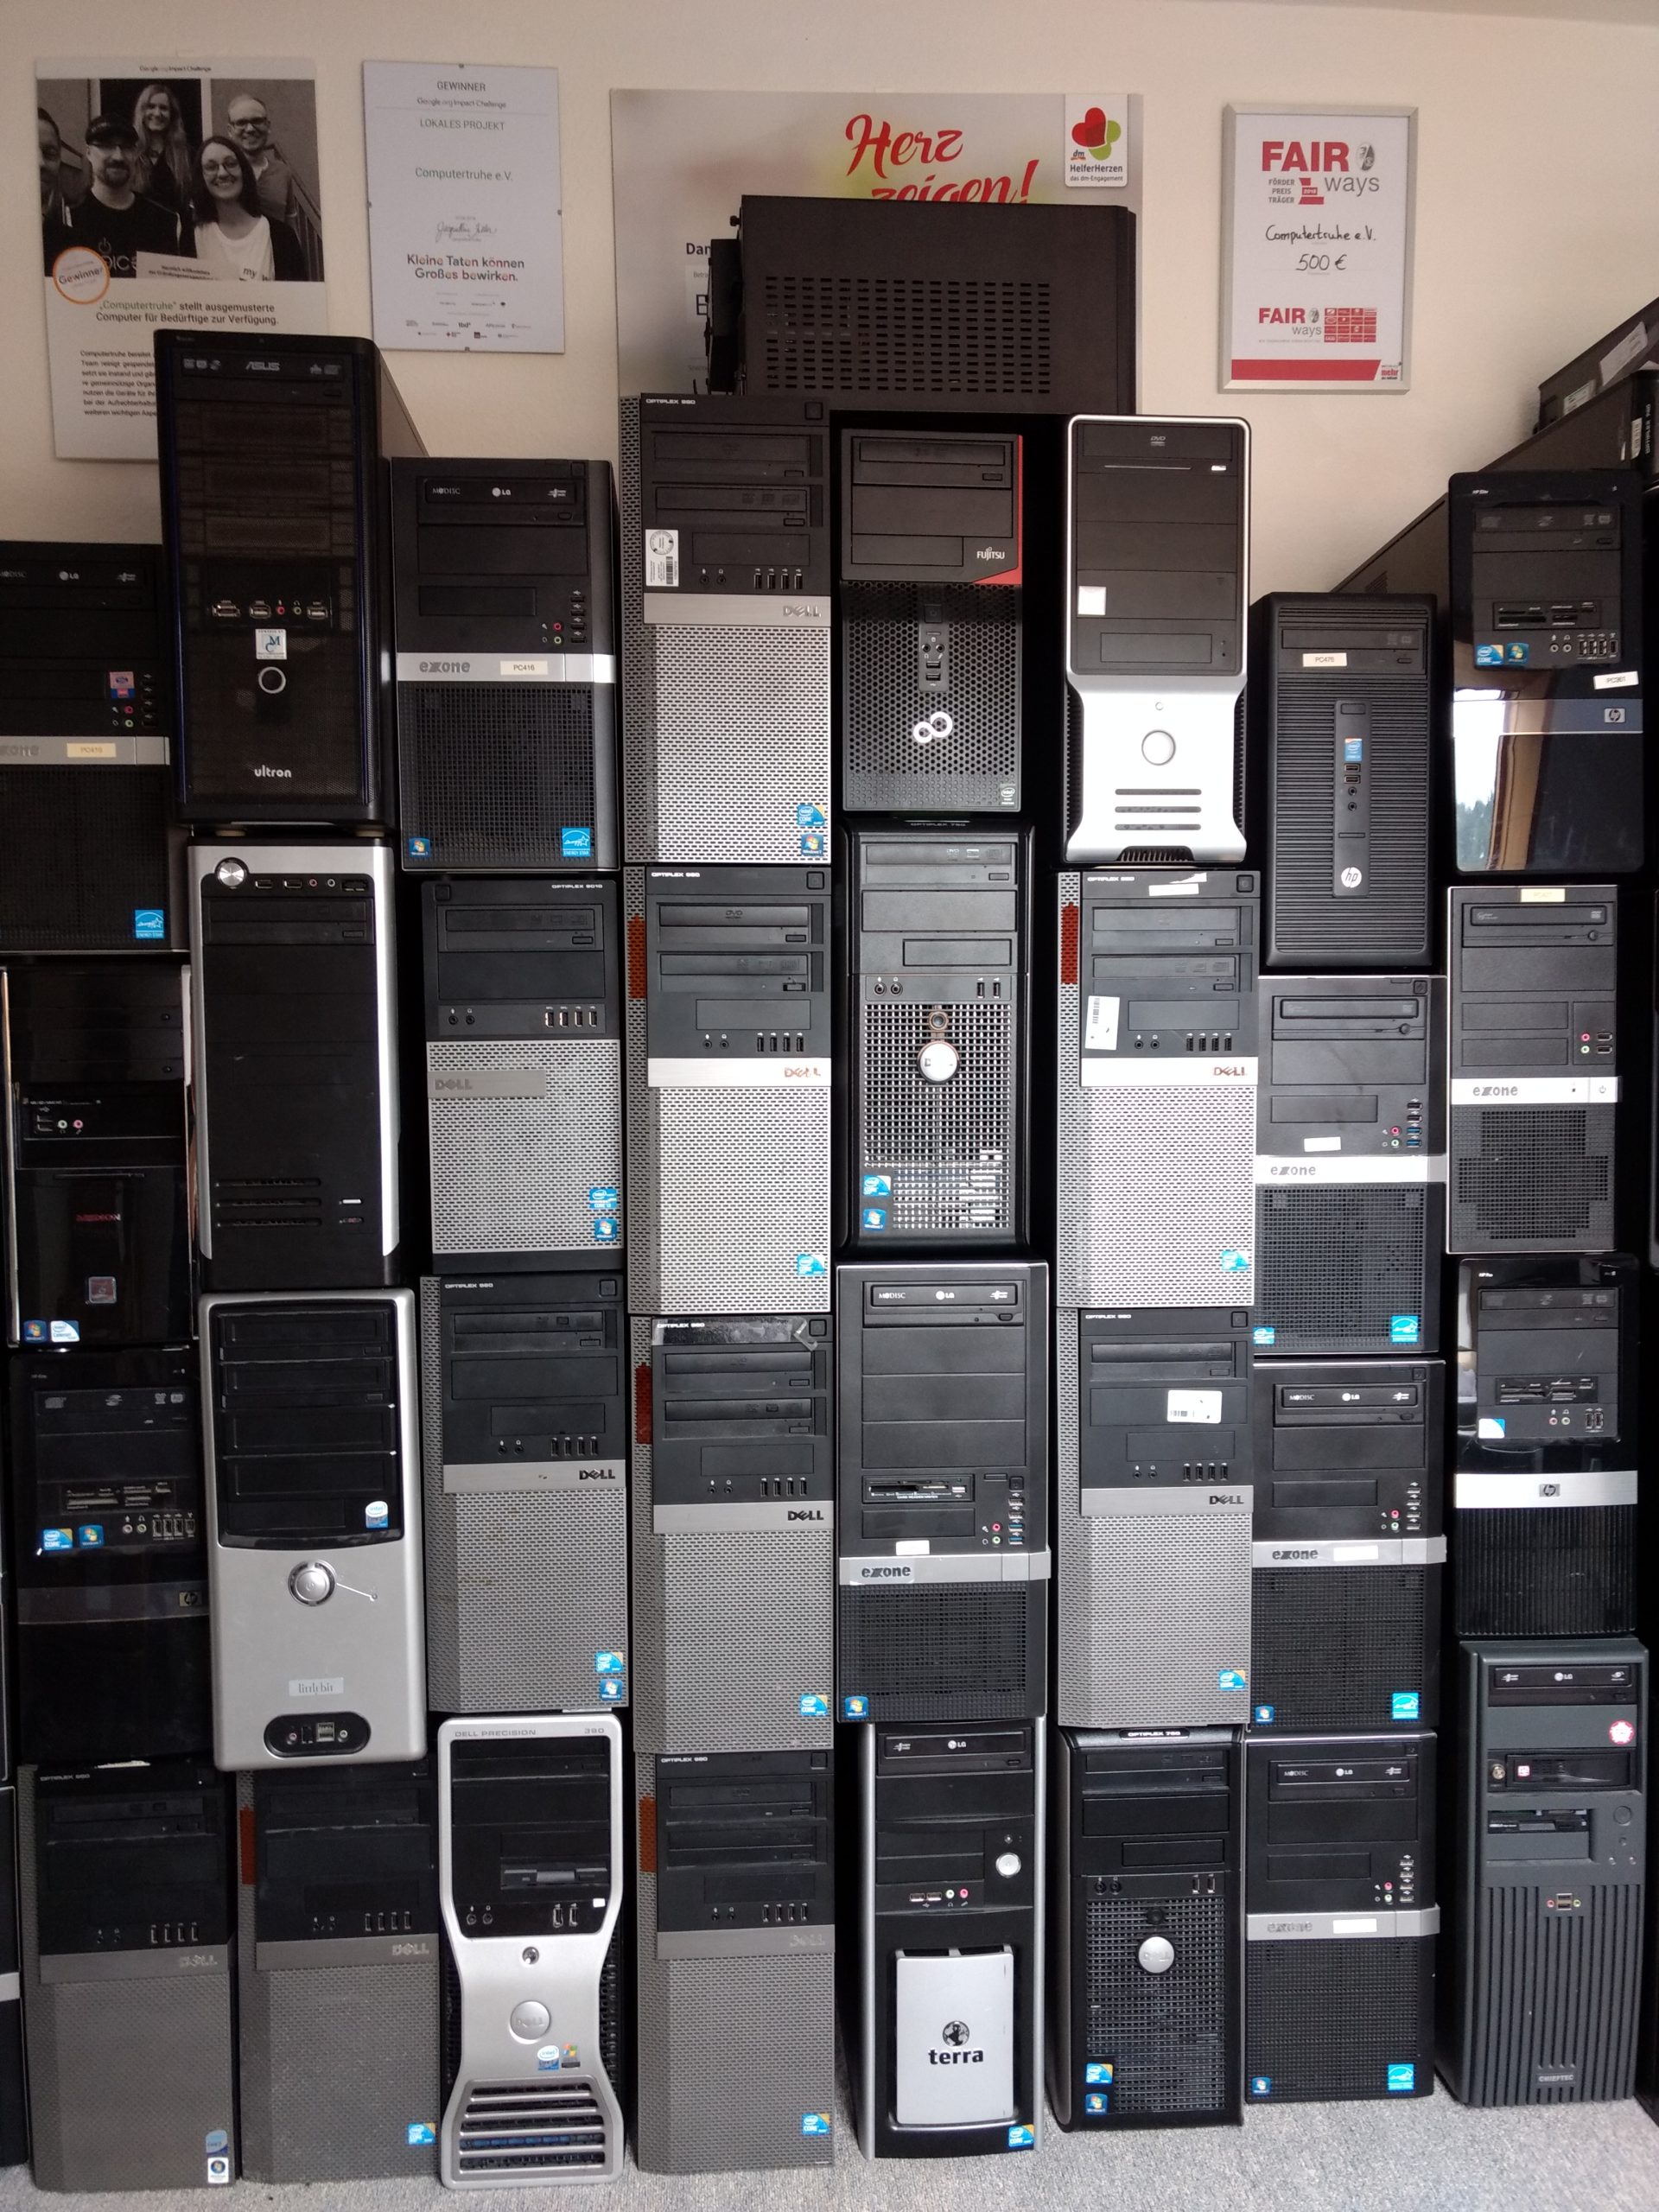 An einer Wand stapeln sich mehr als 30 Desktop-PCs unterschiedlicher Hersteller. Darüber hängen vier Auszeichnungen, die der Verein erhalten hat.